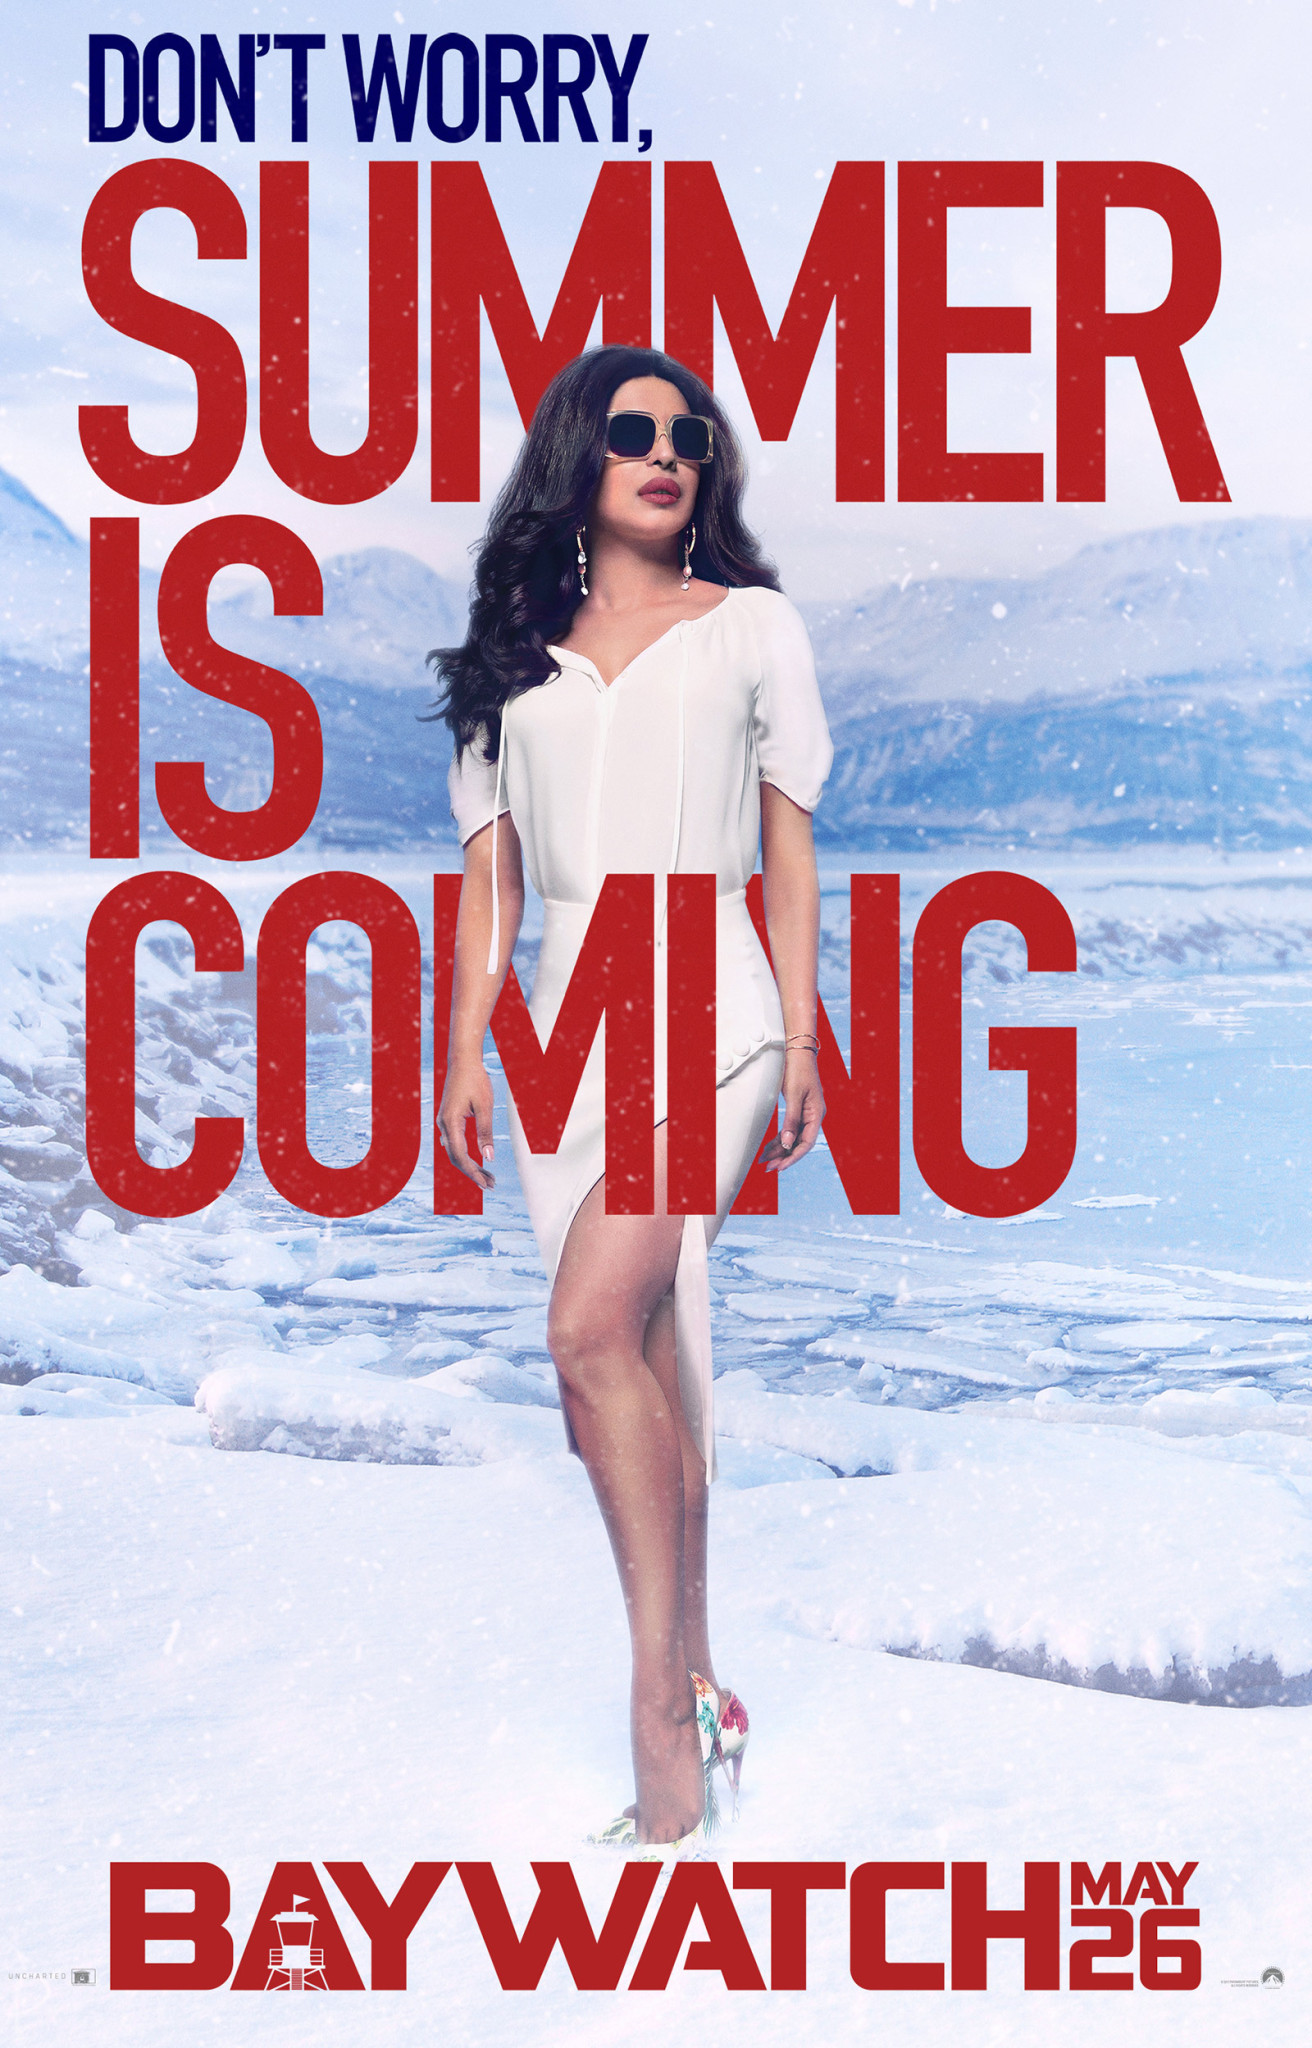 $!“El verano llega” con nuevos posters de Baywatch